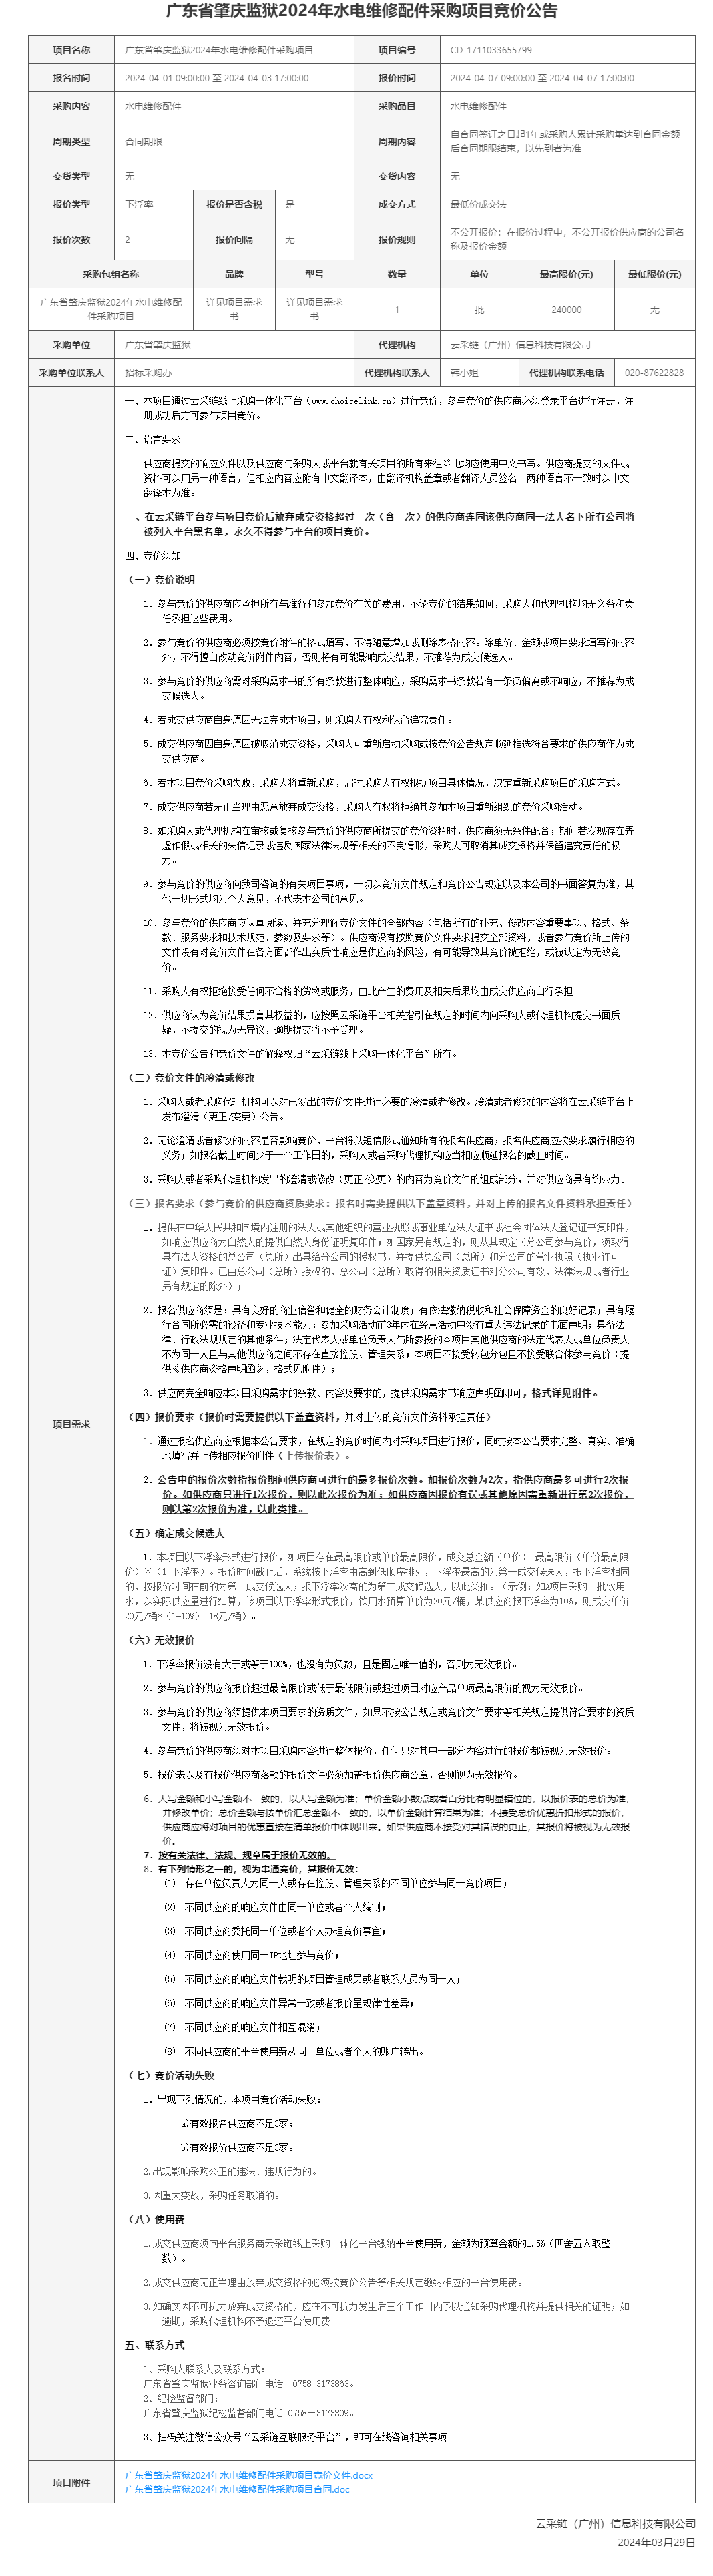 广东省肇庆监狱2024年水电维修配件采购项目竞价公告.png